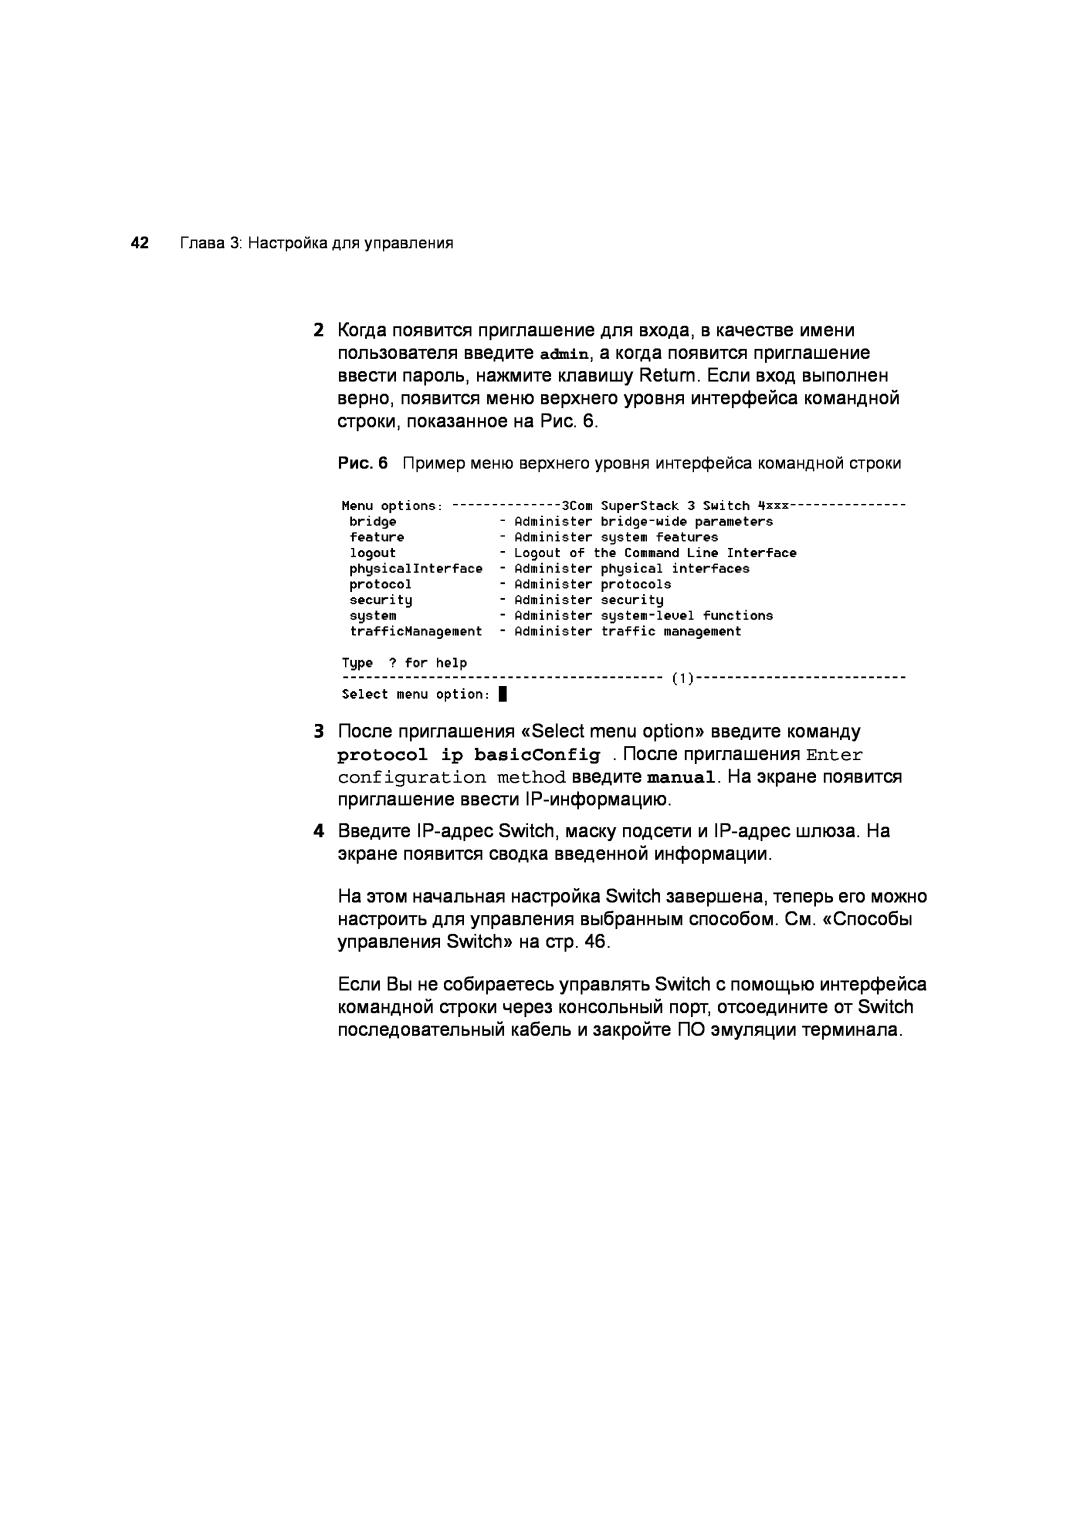 3Com 3C17701 manual Рис. 6 Пример меню верхнего уровня интерфейса командной строки, 42 Глава 3 Настройка для управления 